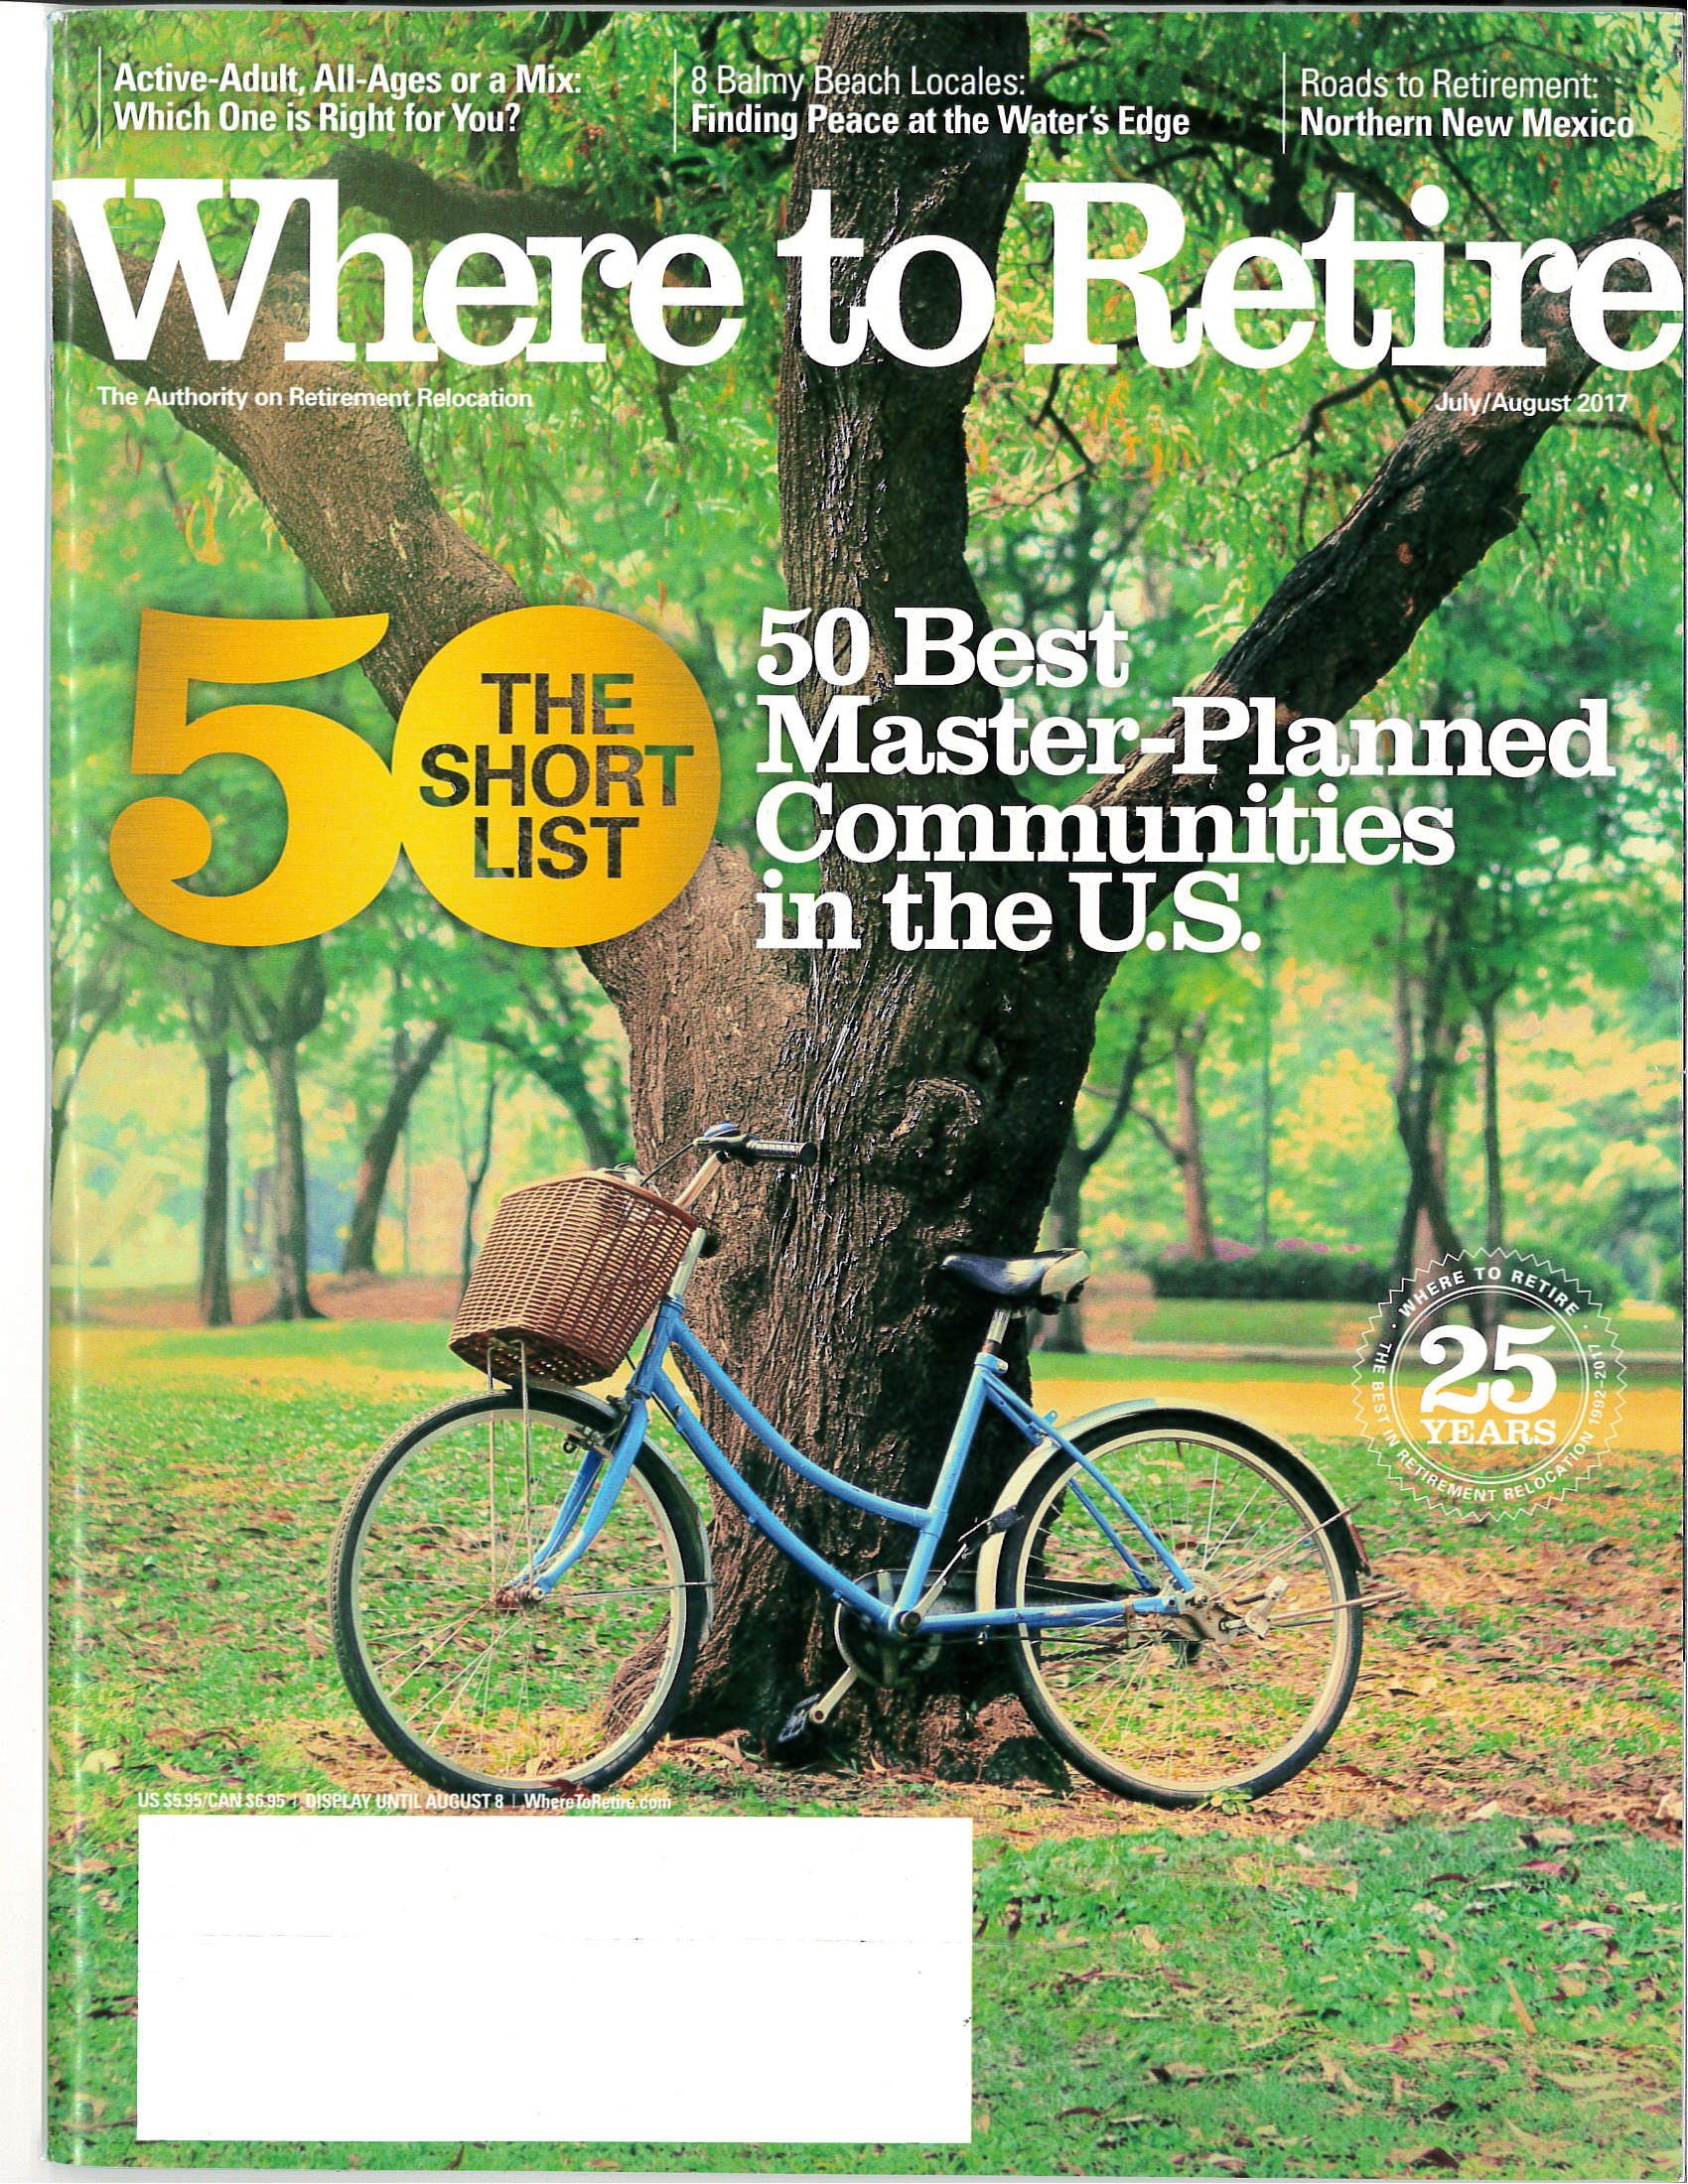 Eastmark makes Where to Retire magazine “Short List”